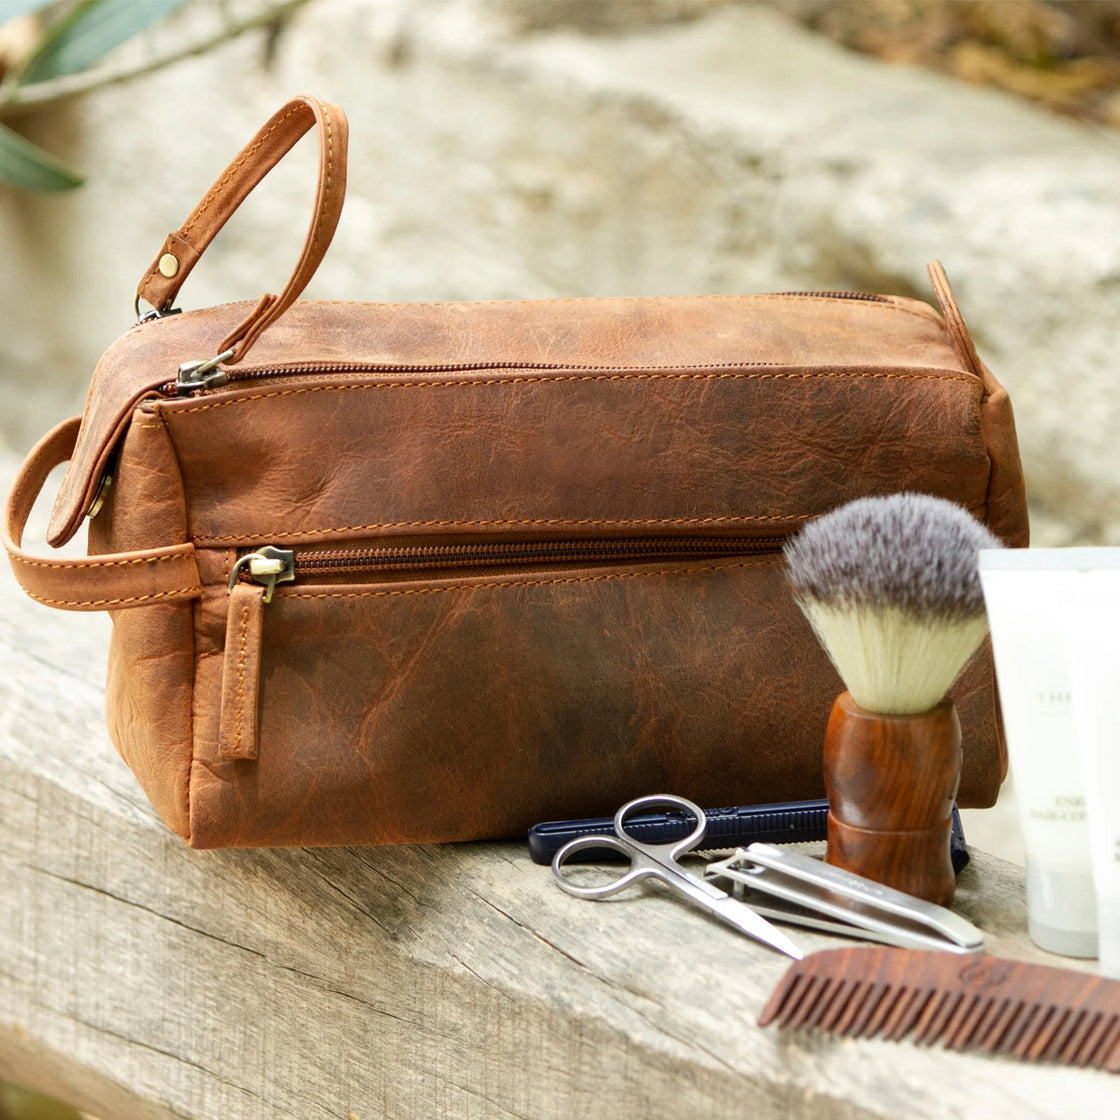 Leather Toiletry Bag for Men | Dopp Kit / Travel Pack Bootlegger Brown